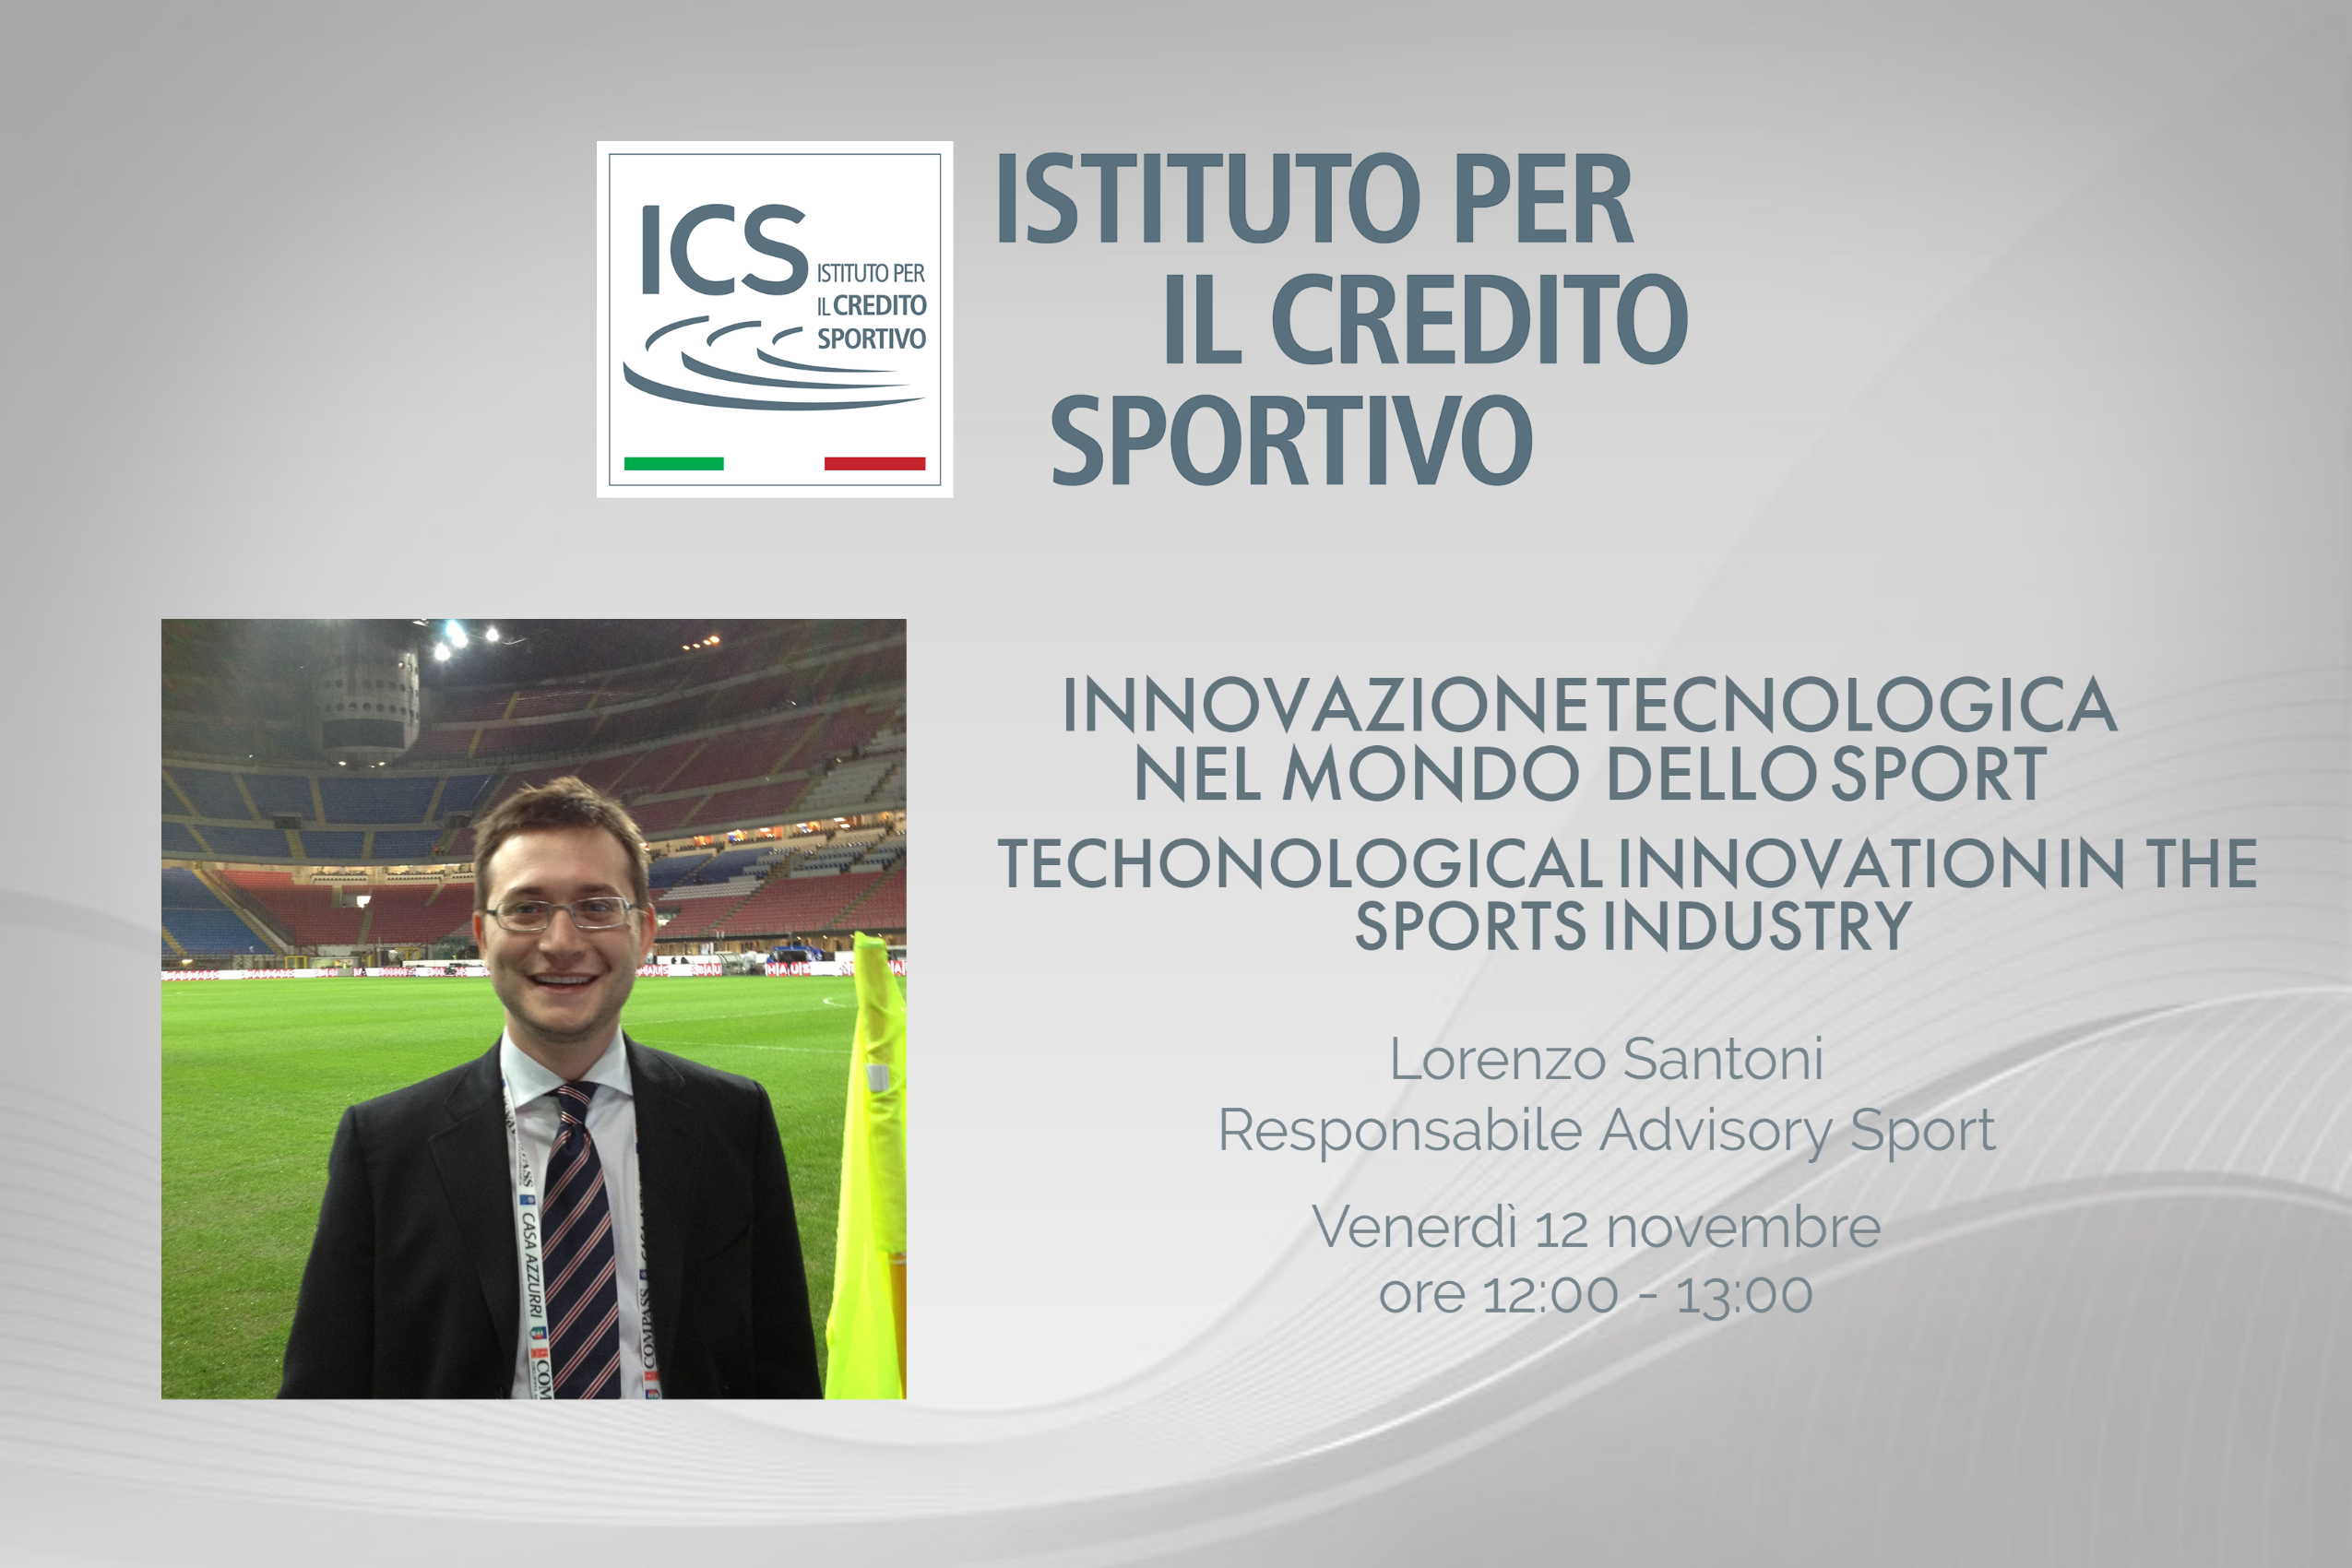 Technological innovation in the sports industry - Innovazione tecnologica nel mondo dello sport